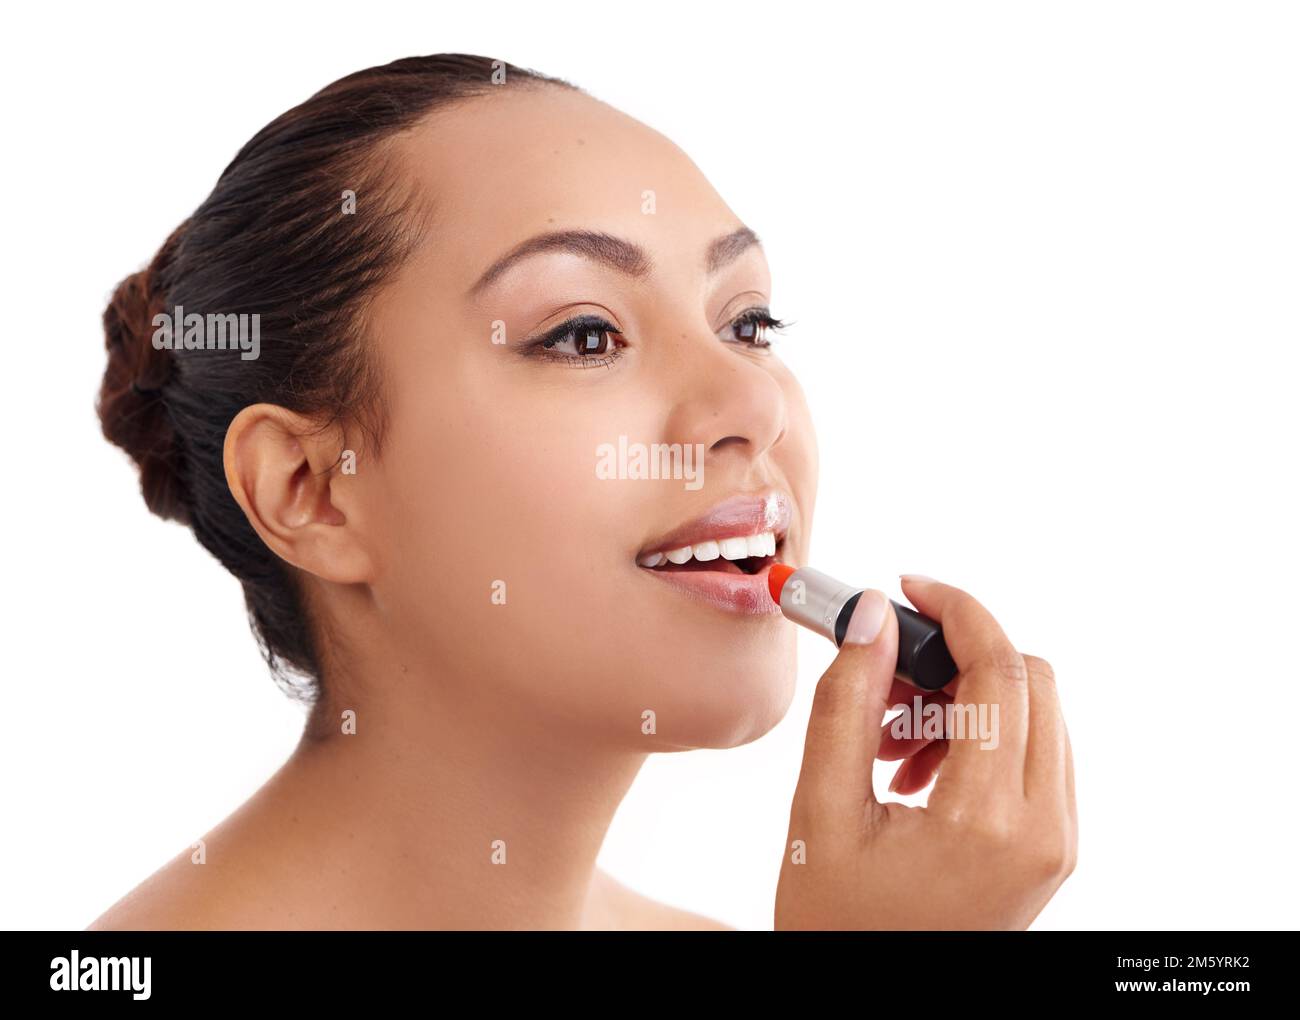 Ajouter de la couleur à ses lèvres. Photo studio d'une jeune femme en train de mettre un rouge à lèvres. Banque D'Images